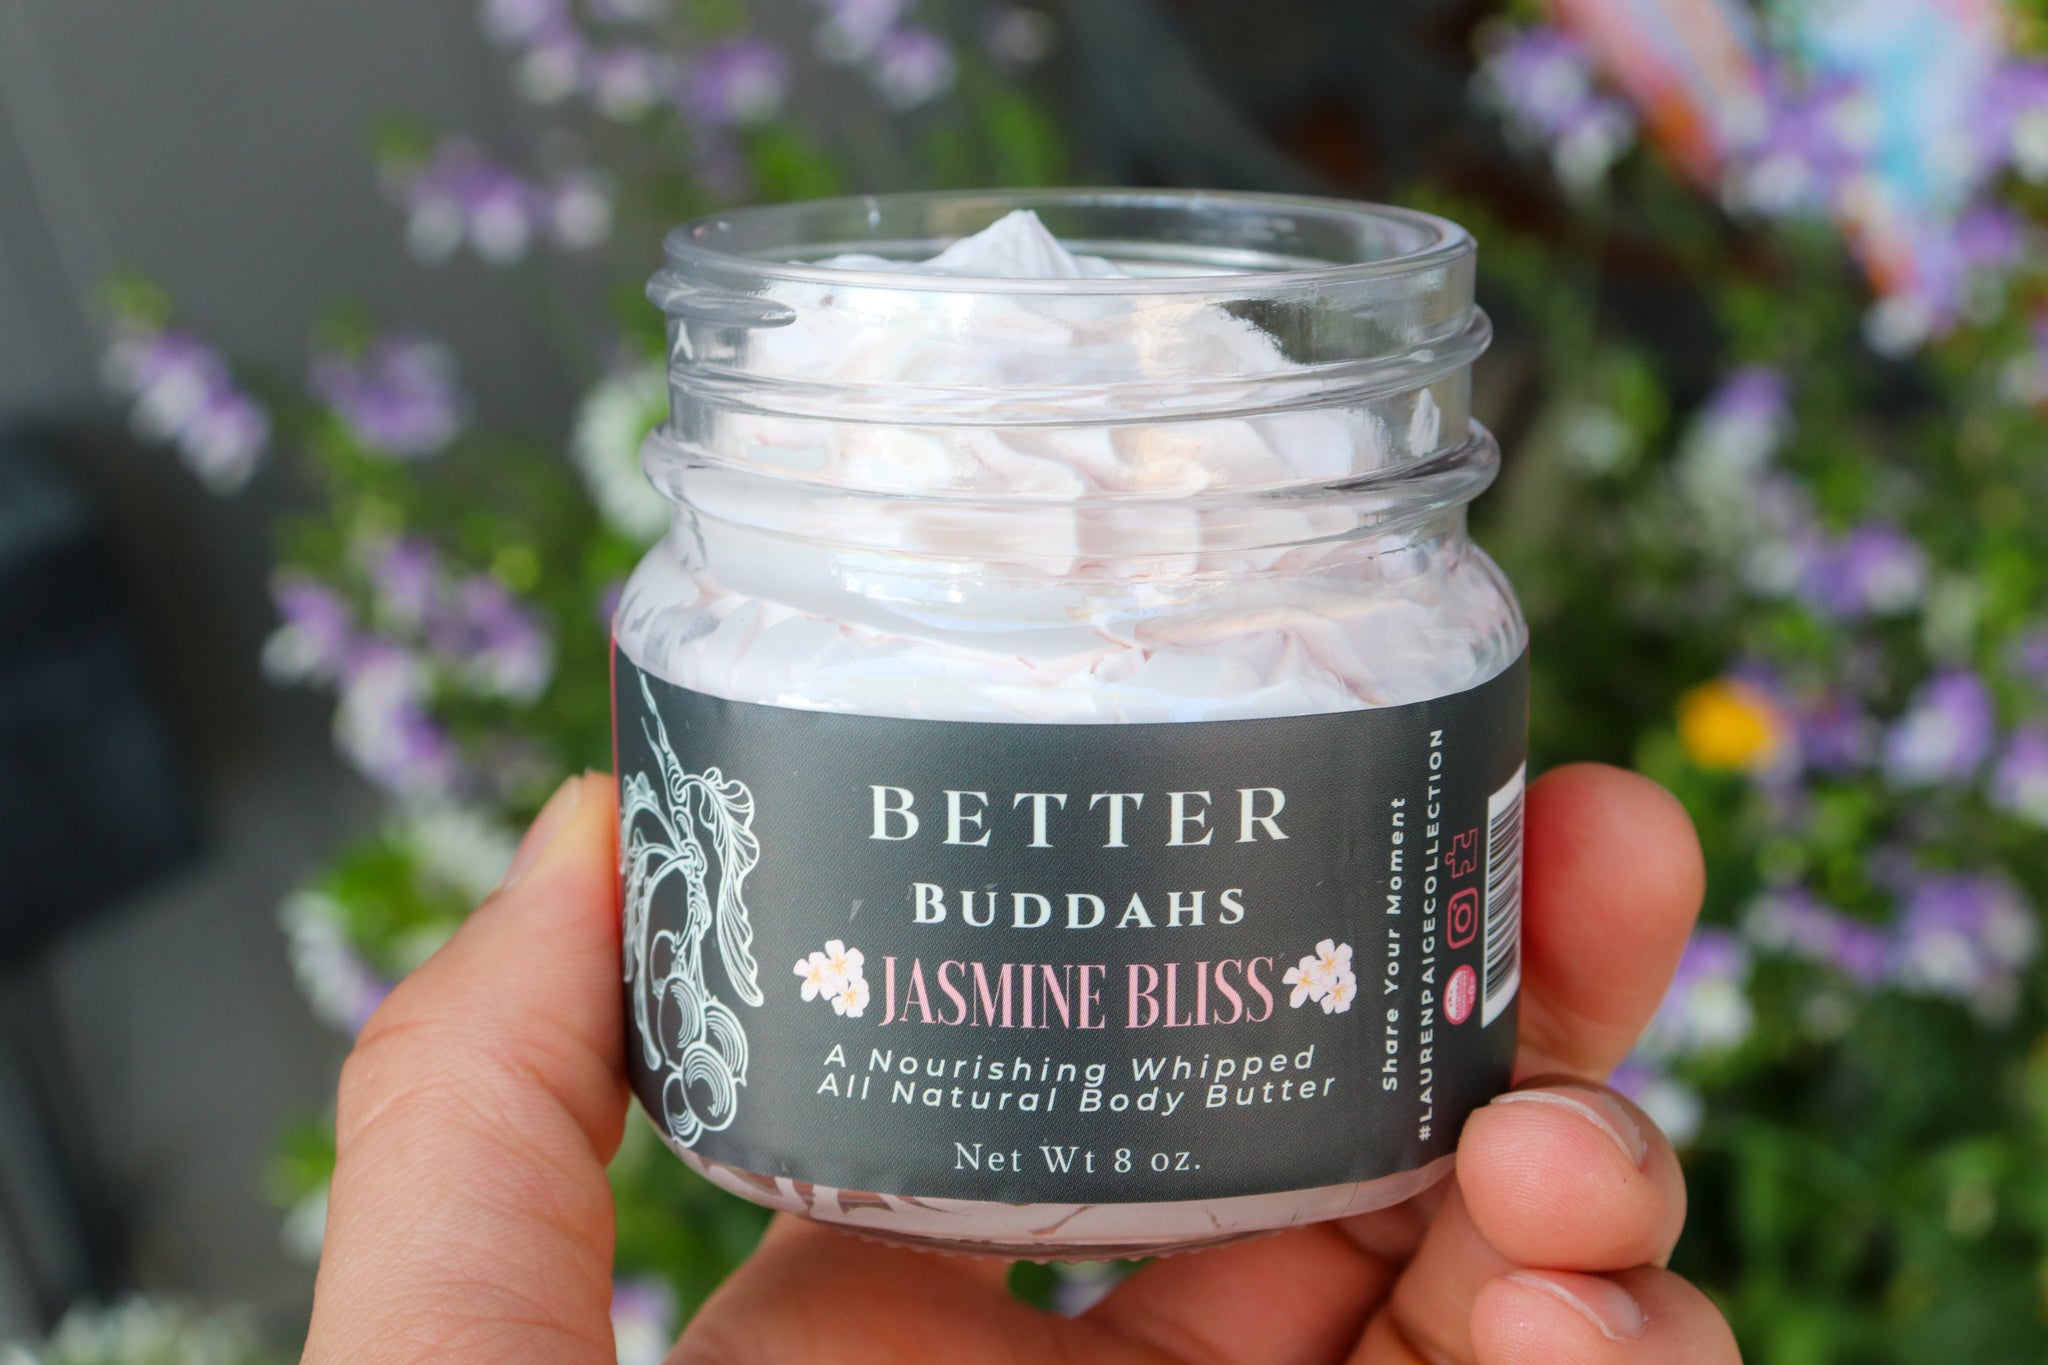 Better Buddahs | Jasmine Bliss | All Natural Whipped Body Butter